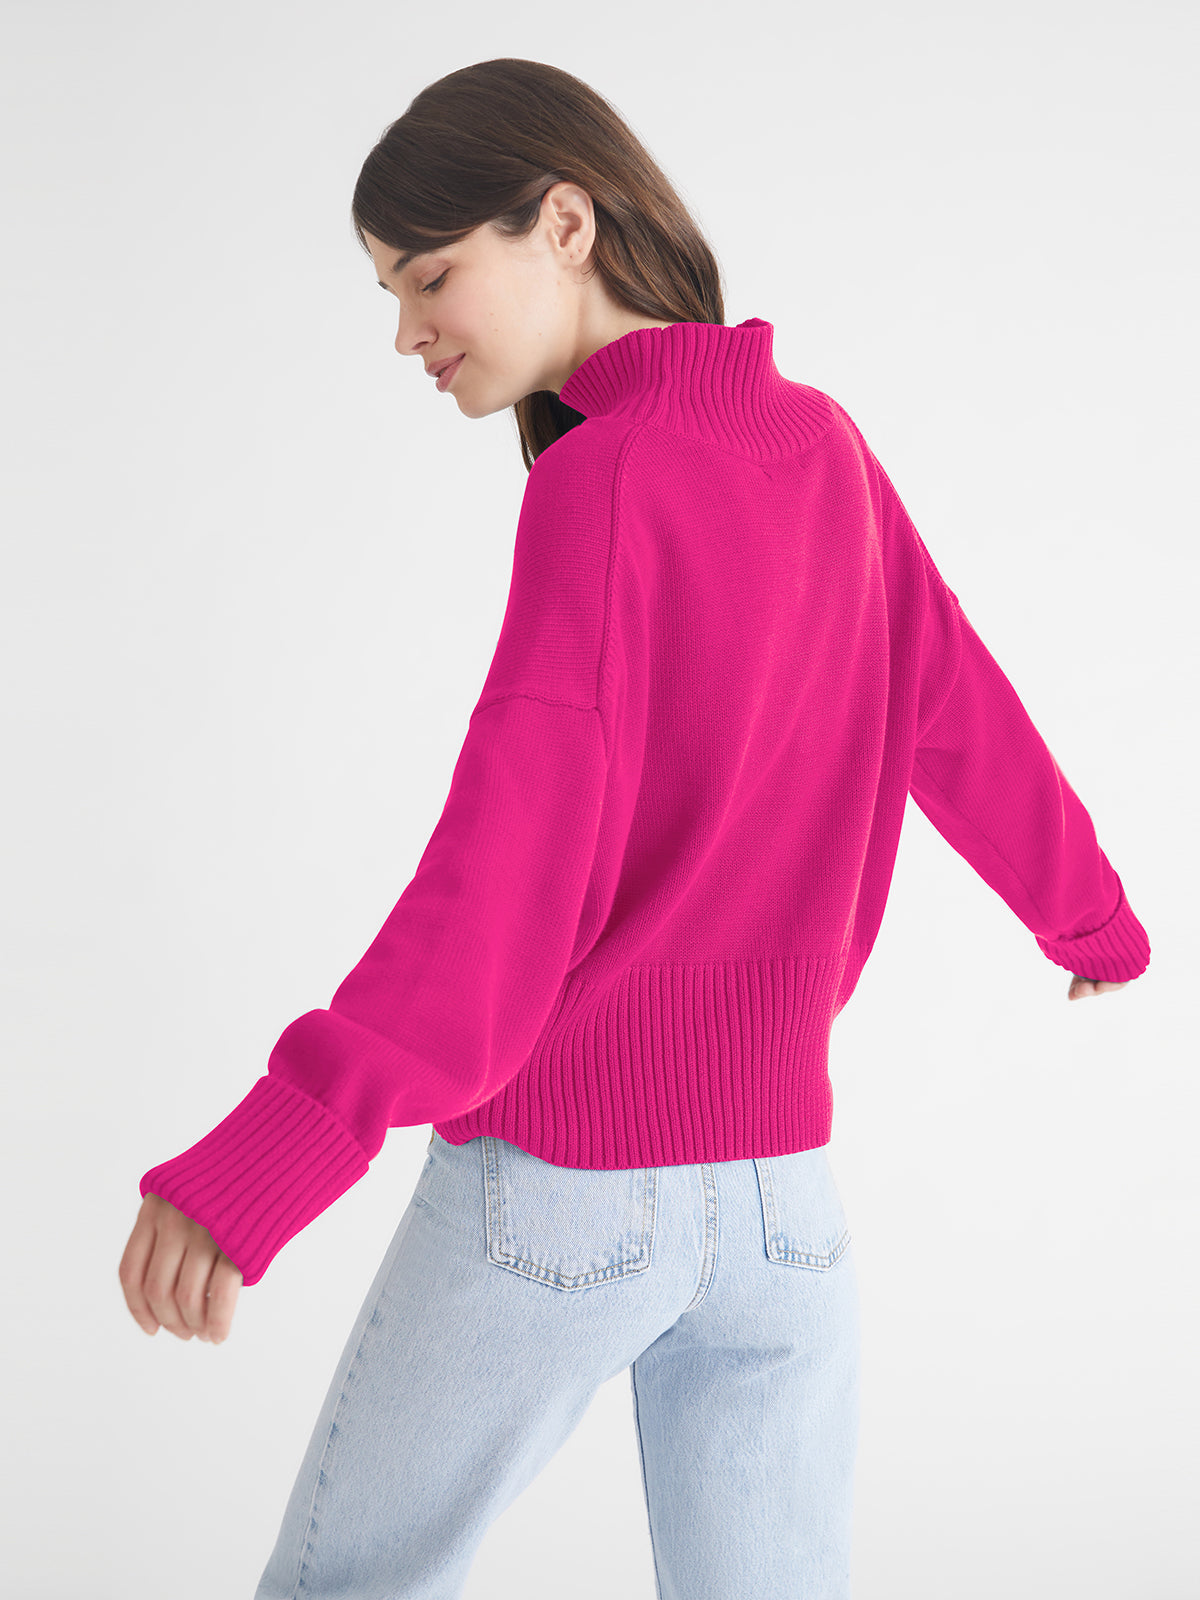 525 America Blair Cotton Mock Neck Sweater in Fuchsia